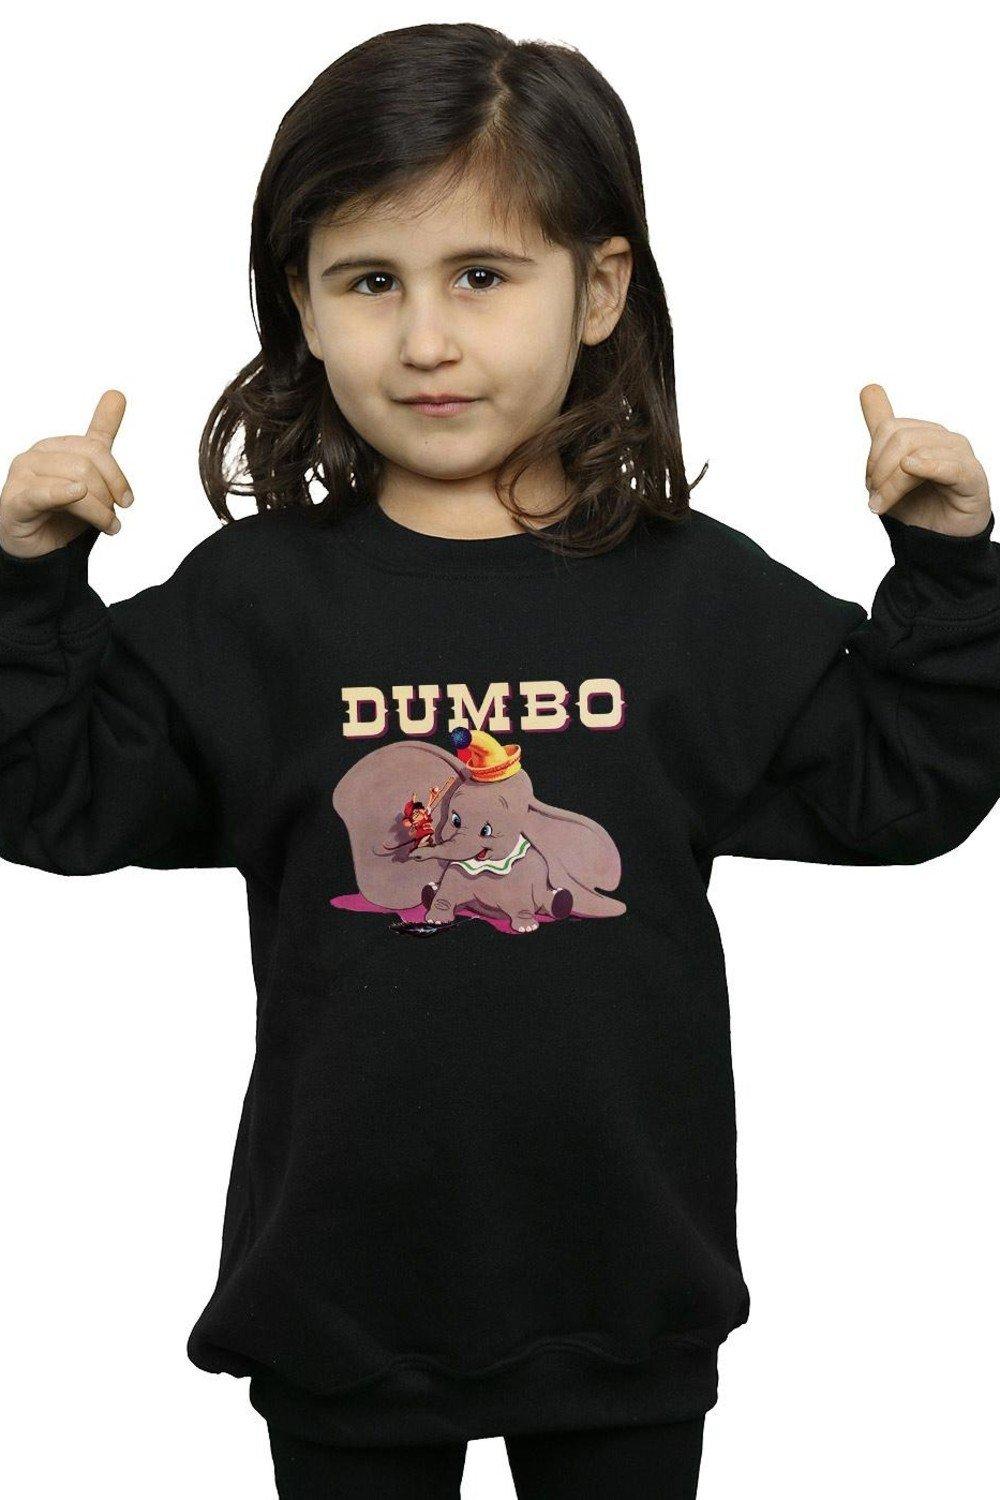 Dumbo Timothy’s Trombone Sweatshirt